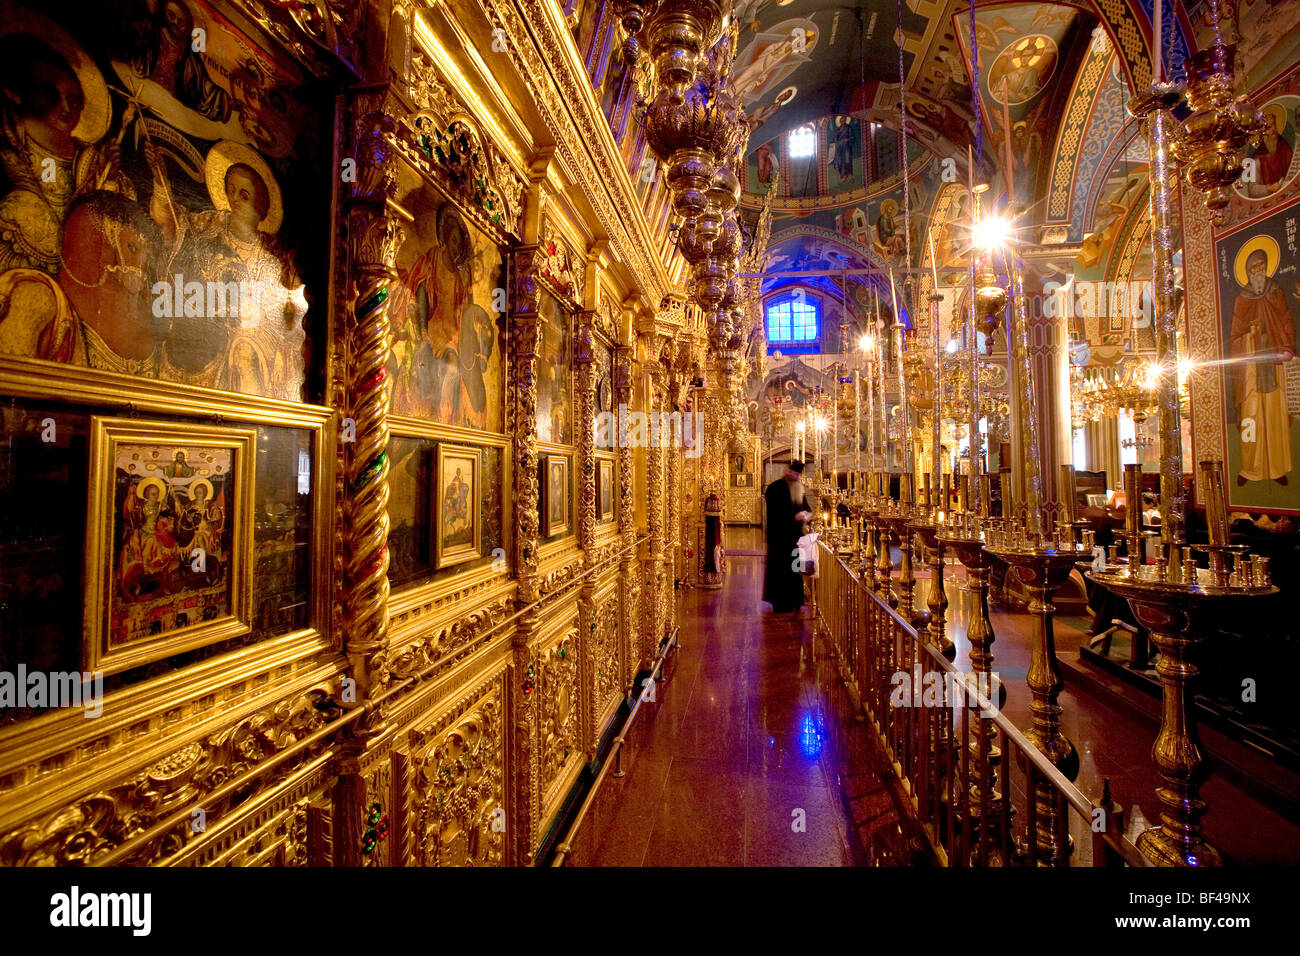 Royal monastère de Kykkos, cour, monastère orthodoxe, Icônes, Mosaïques, Troodos, Chypre, Grèce, Europe Banque D'Images